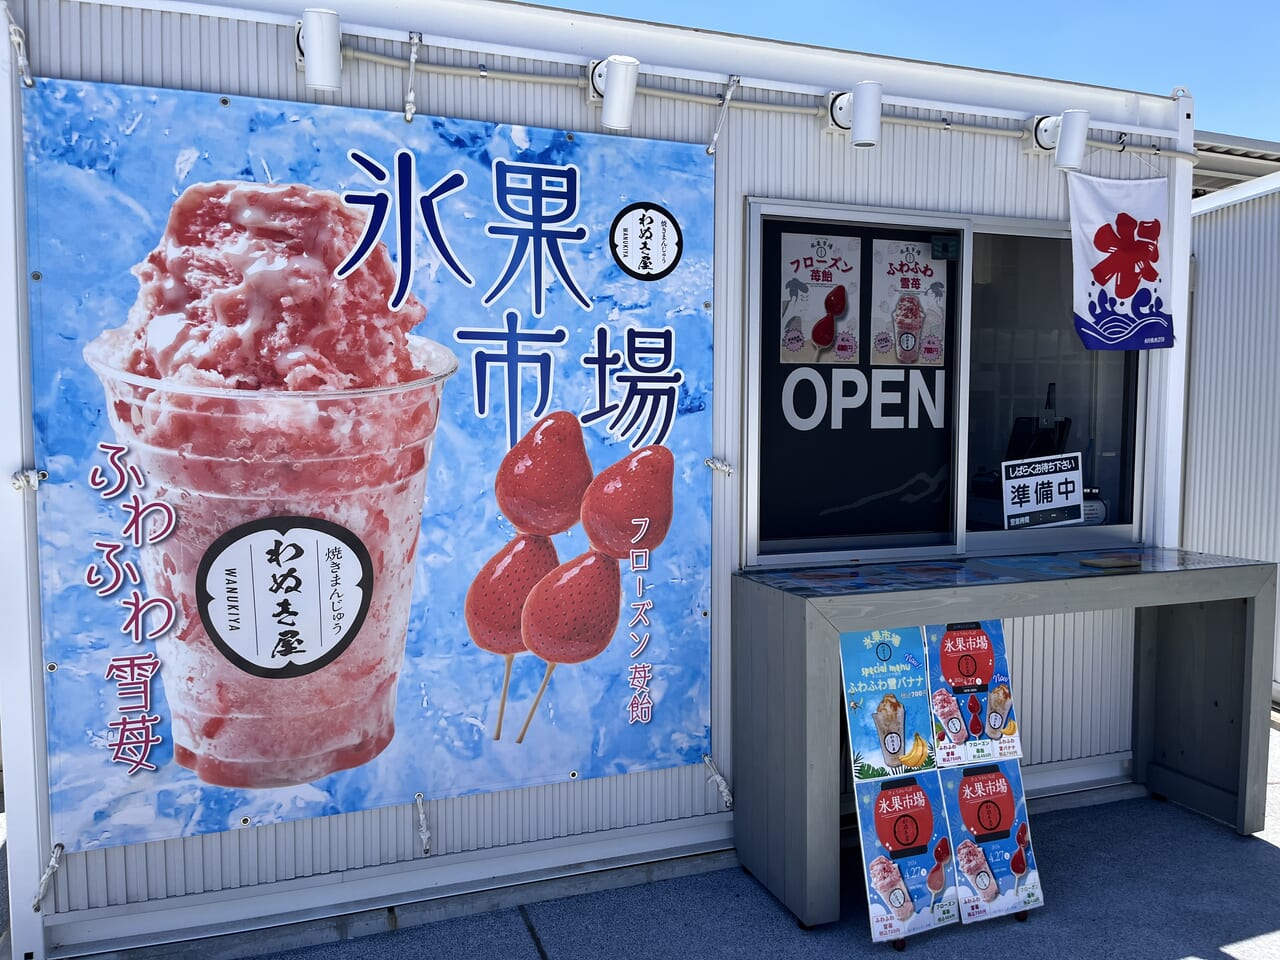 「氷菓市場 わぬき屋」の店舗外観